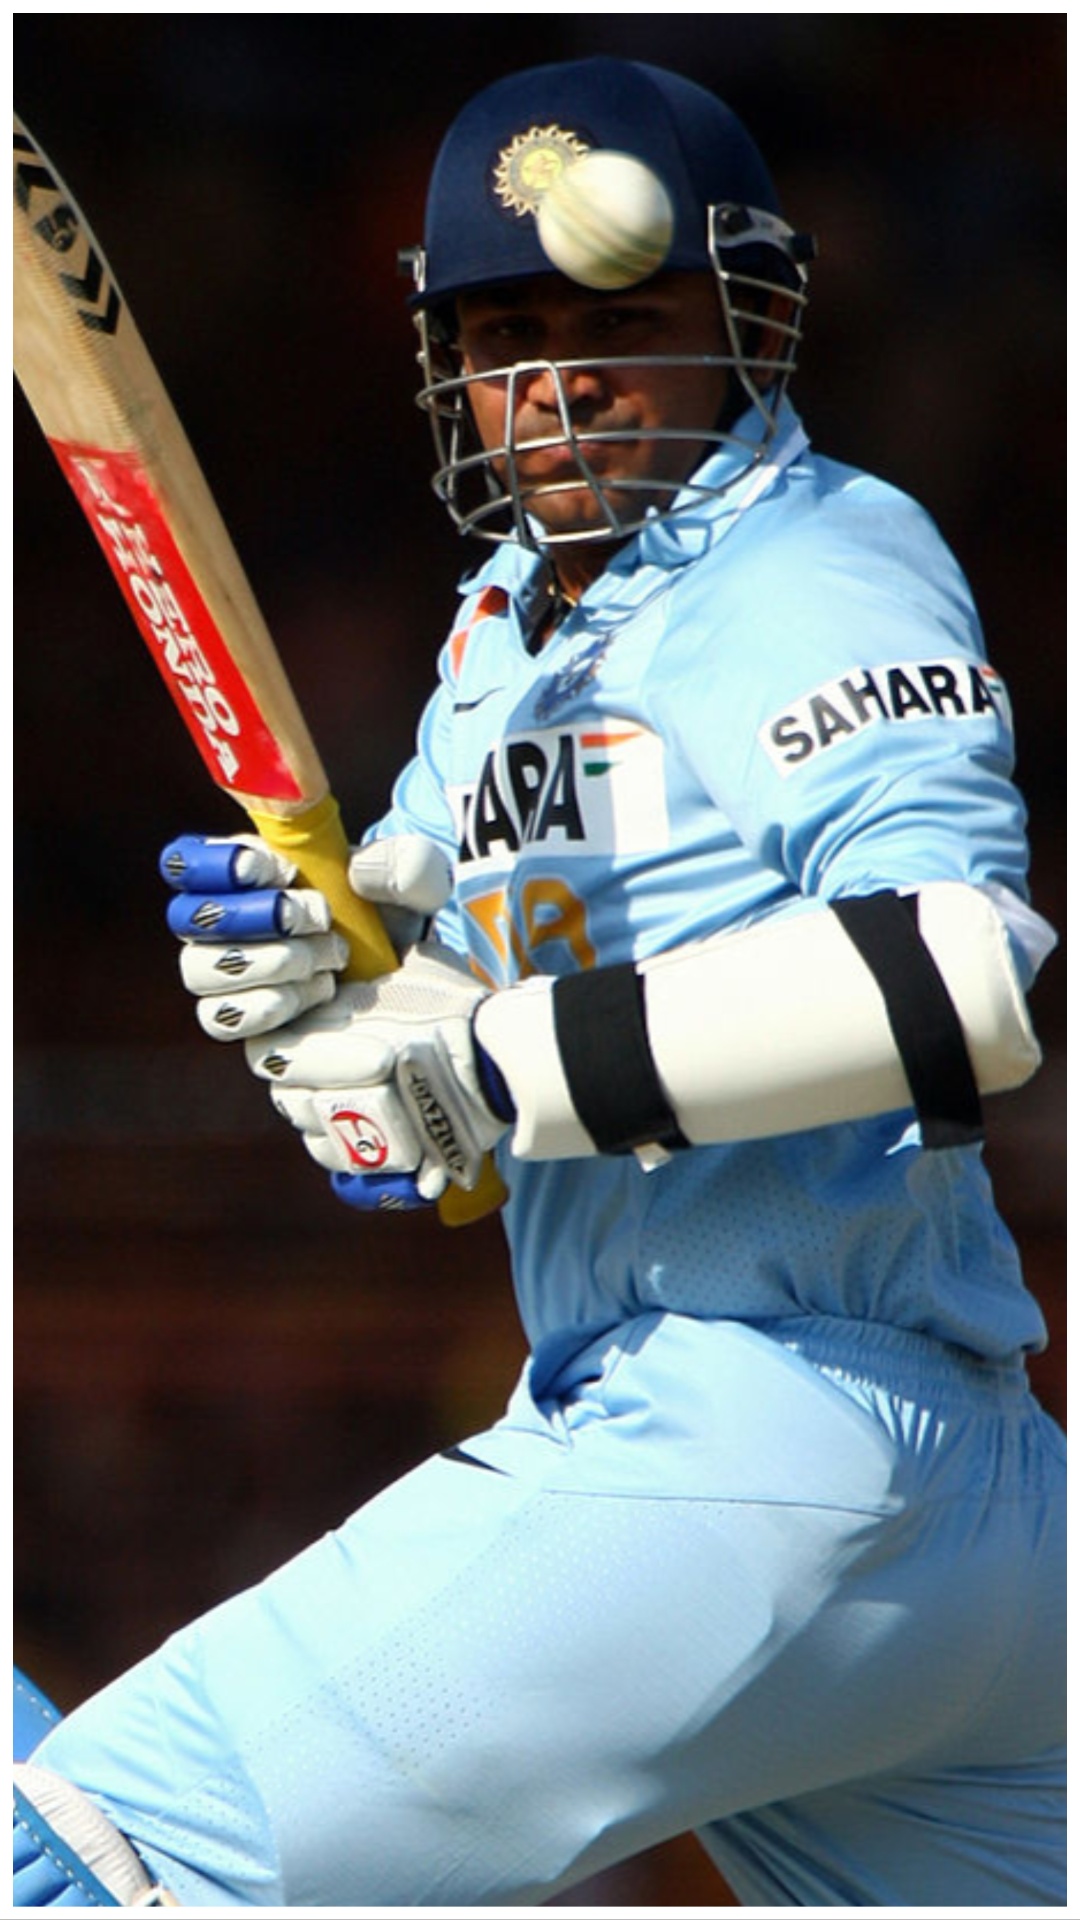 ODI वर्ल्ड कप में टीम इंडिया के लिए सबसे बड़ी पारी खेलने वाले बल्लेबाज 